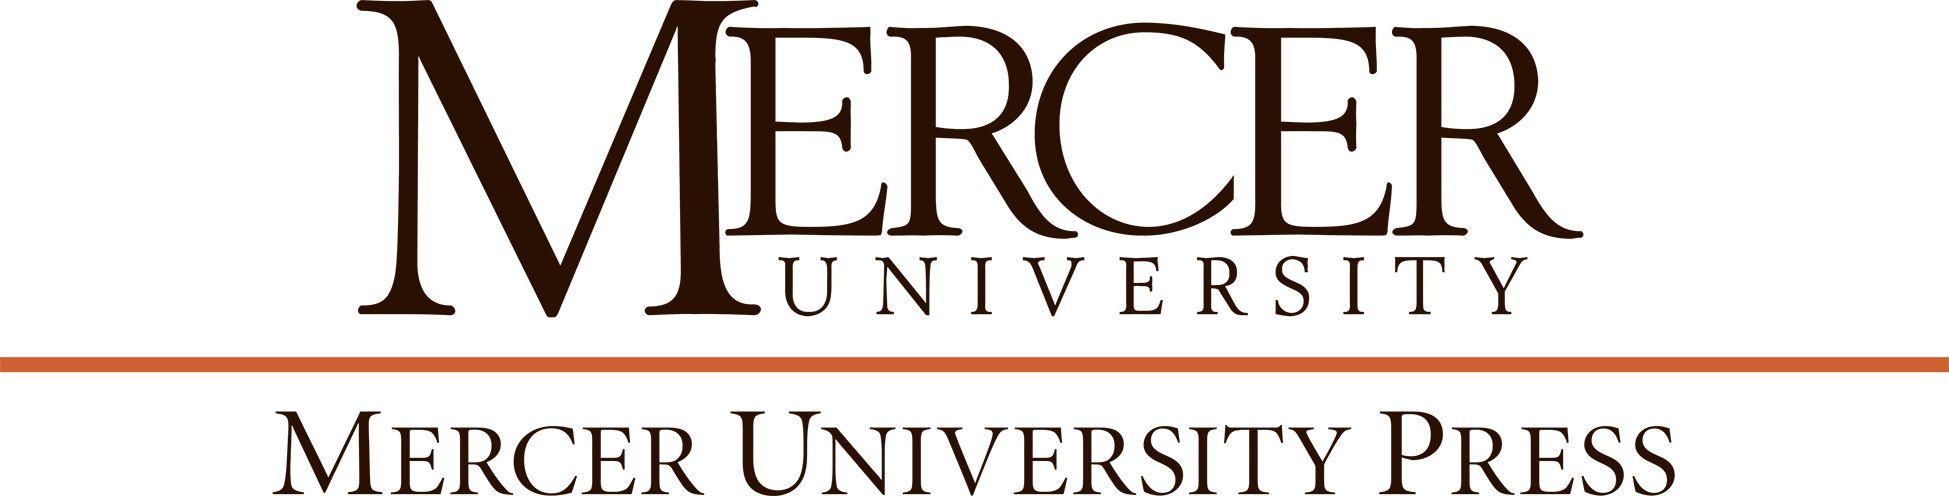 Mercer Logo - Mercer University Press: Home Page